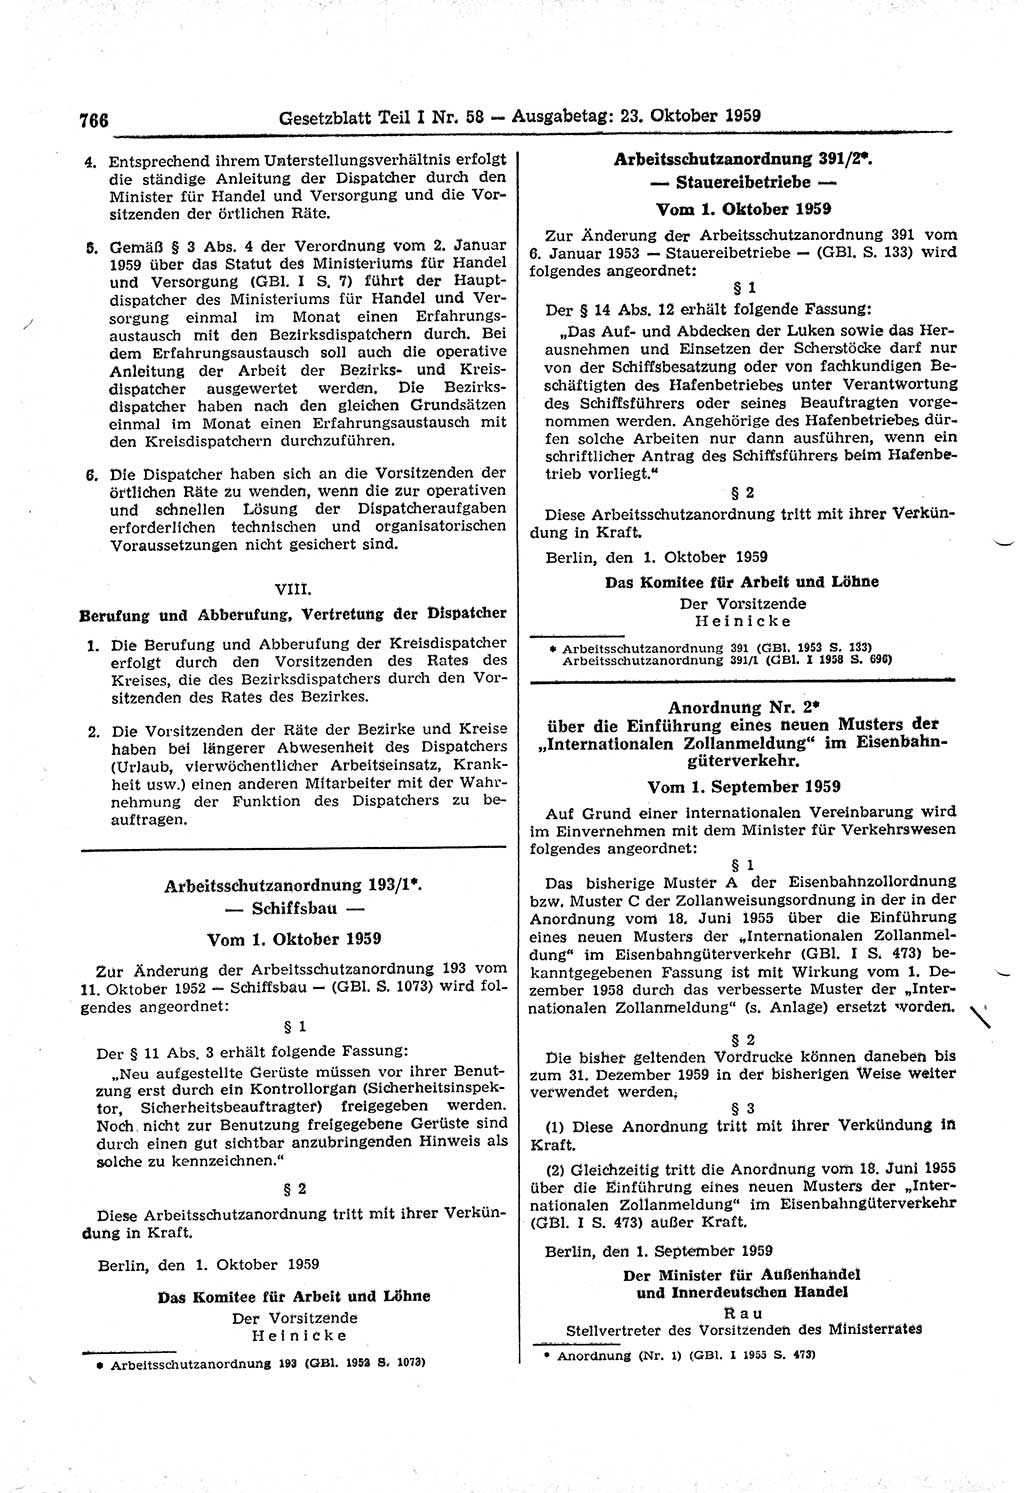 Gesetzblatt (GBl.) der Deutschen Demokratischen Republik (DDR) Teil Ⅰ 1959, Seite 766 (GBl. DDR Ⅰ 1959, S. 766)